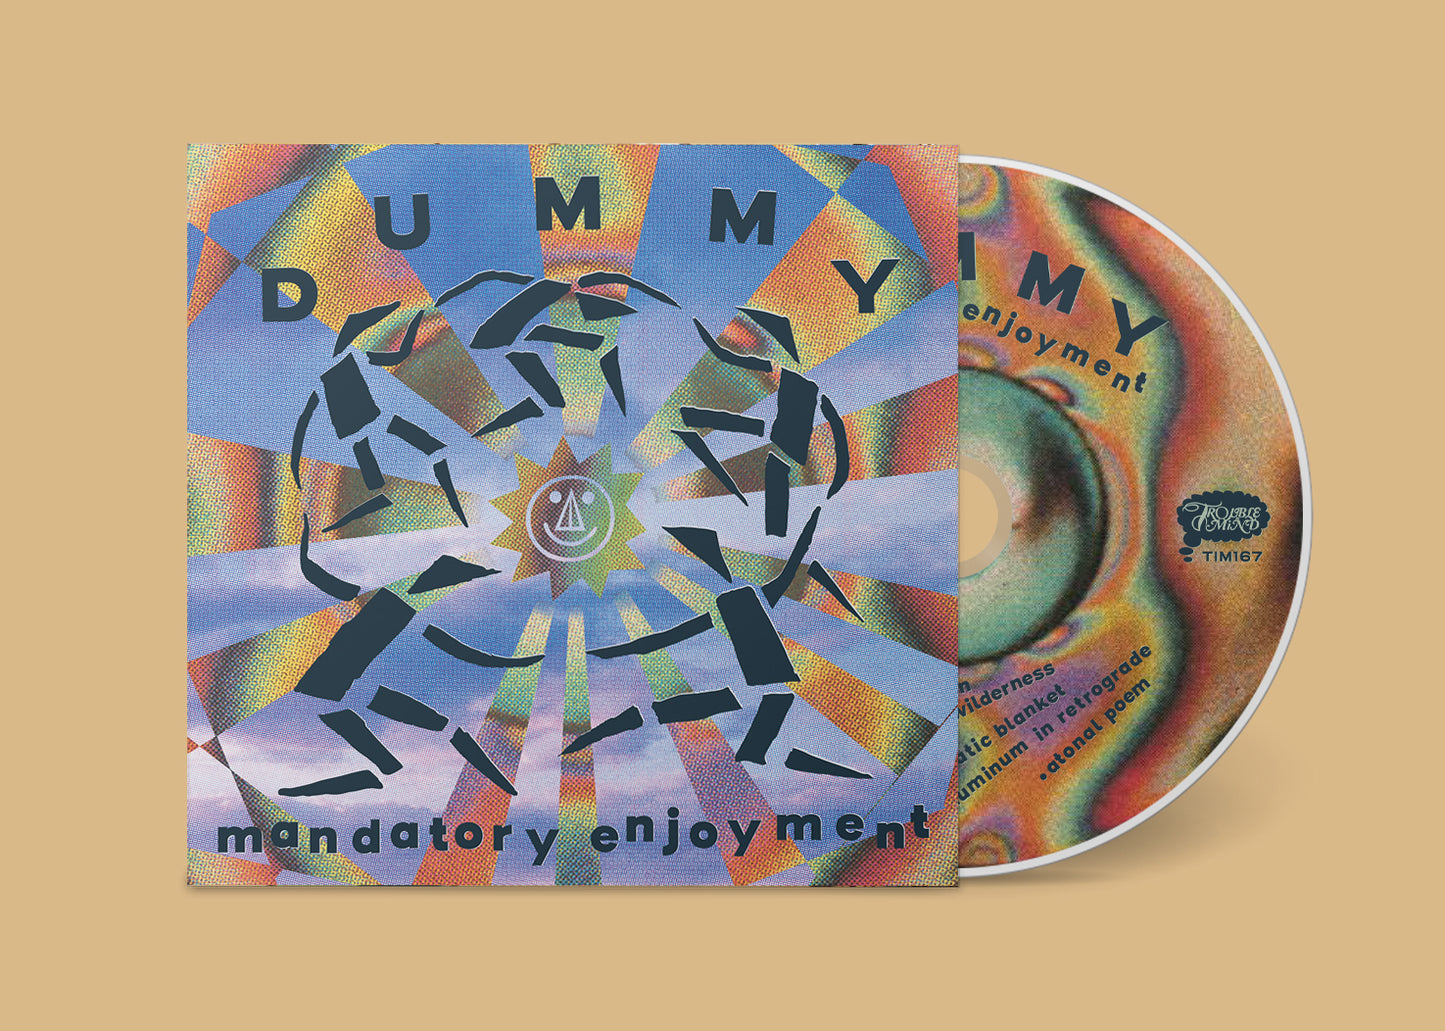 Dummy - Mandatory Enjoyment